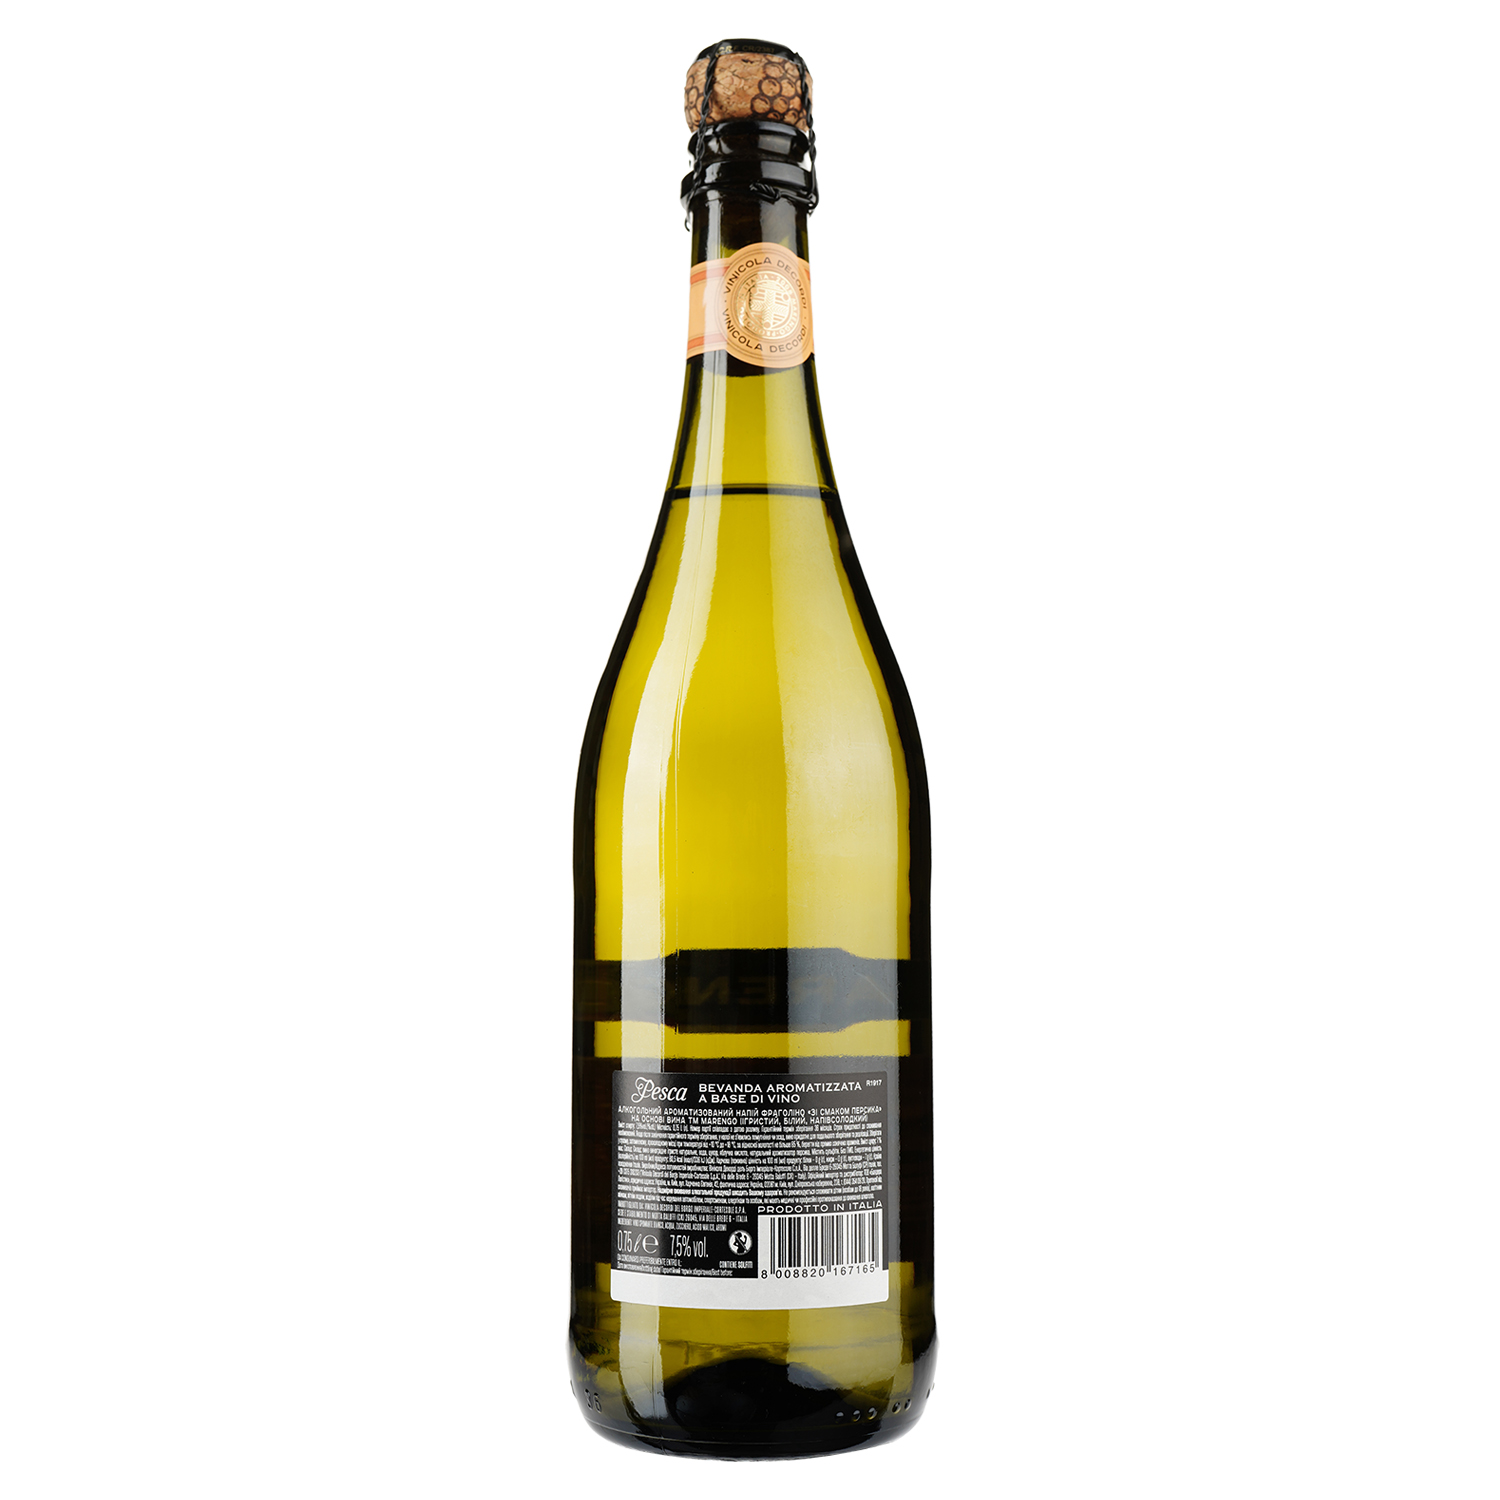 Напиток винный Marengo Pesca, белое, полусладкое, 7,5%, 0,75л - фото 1